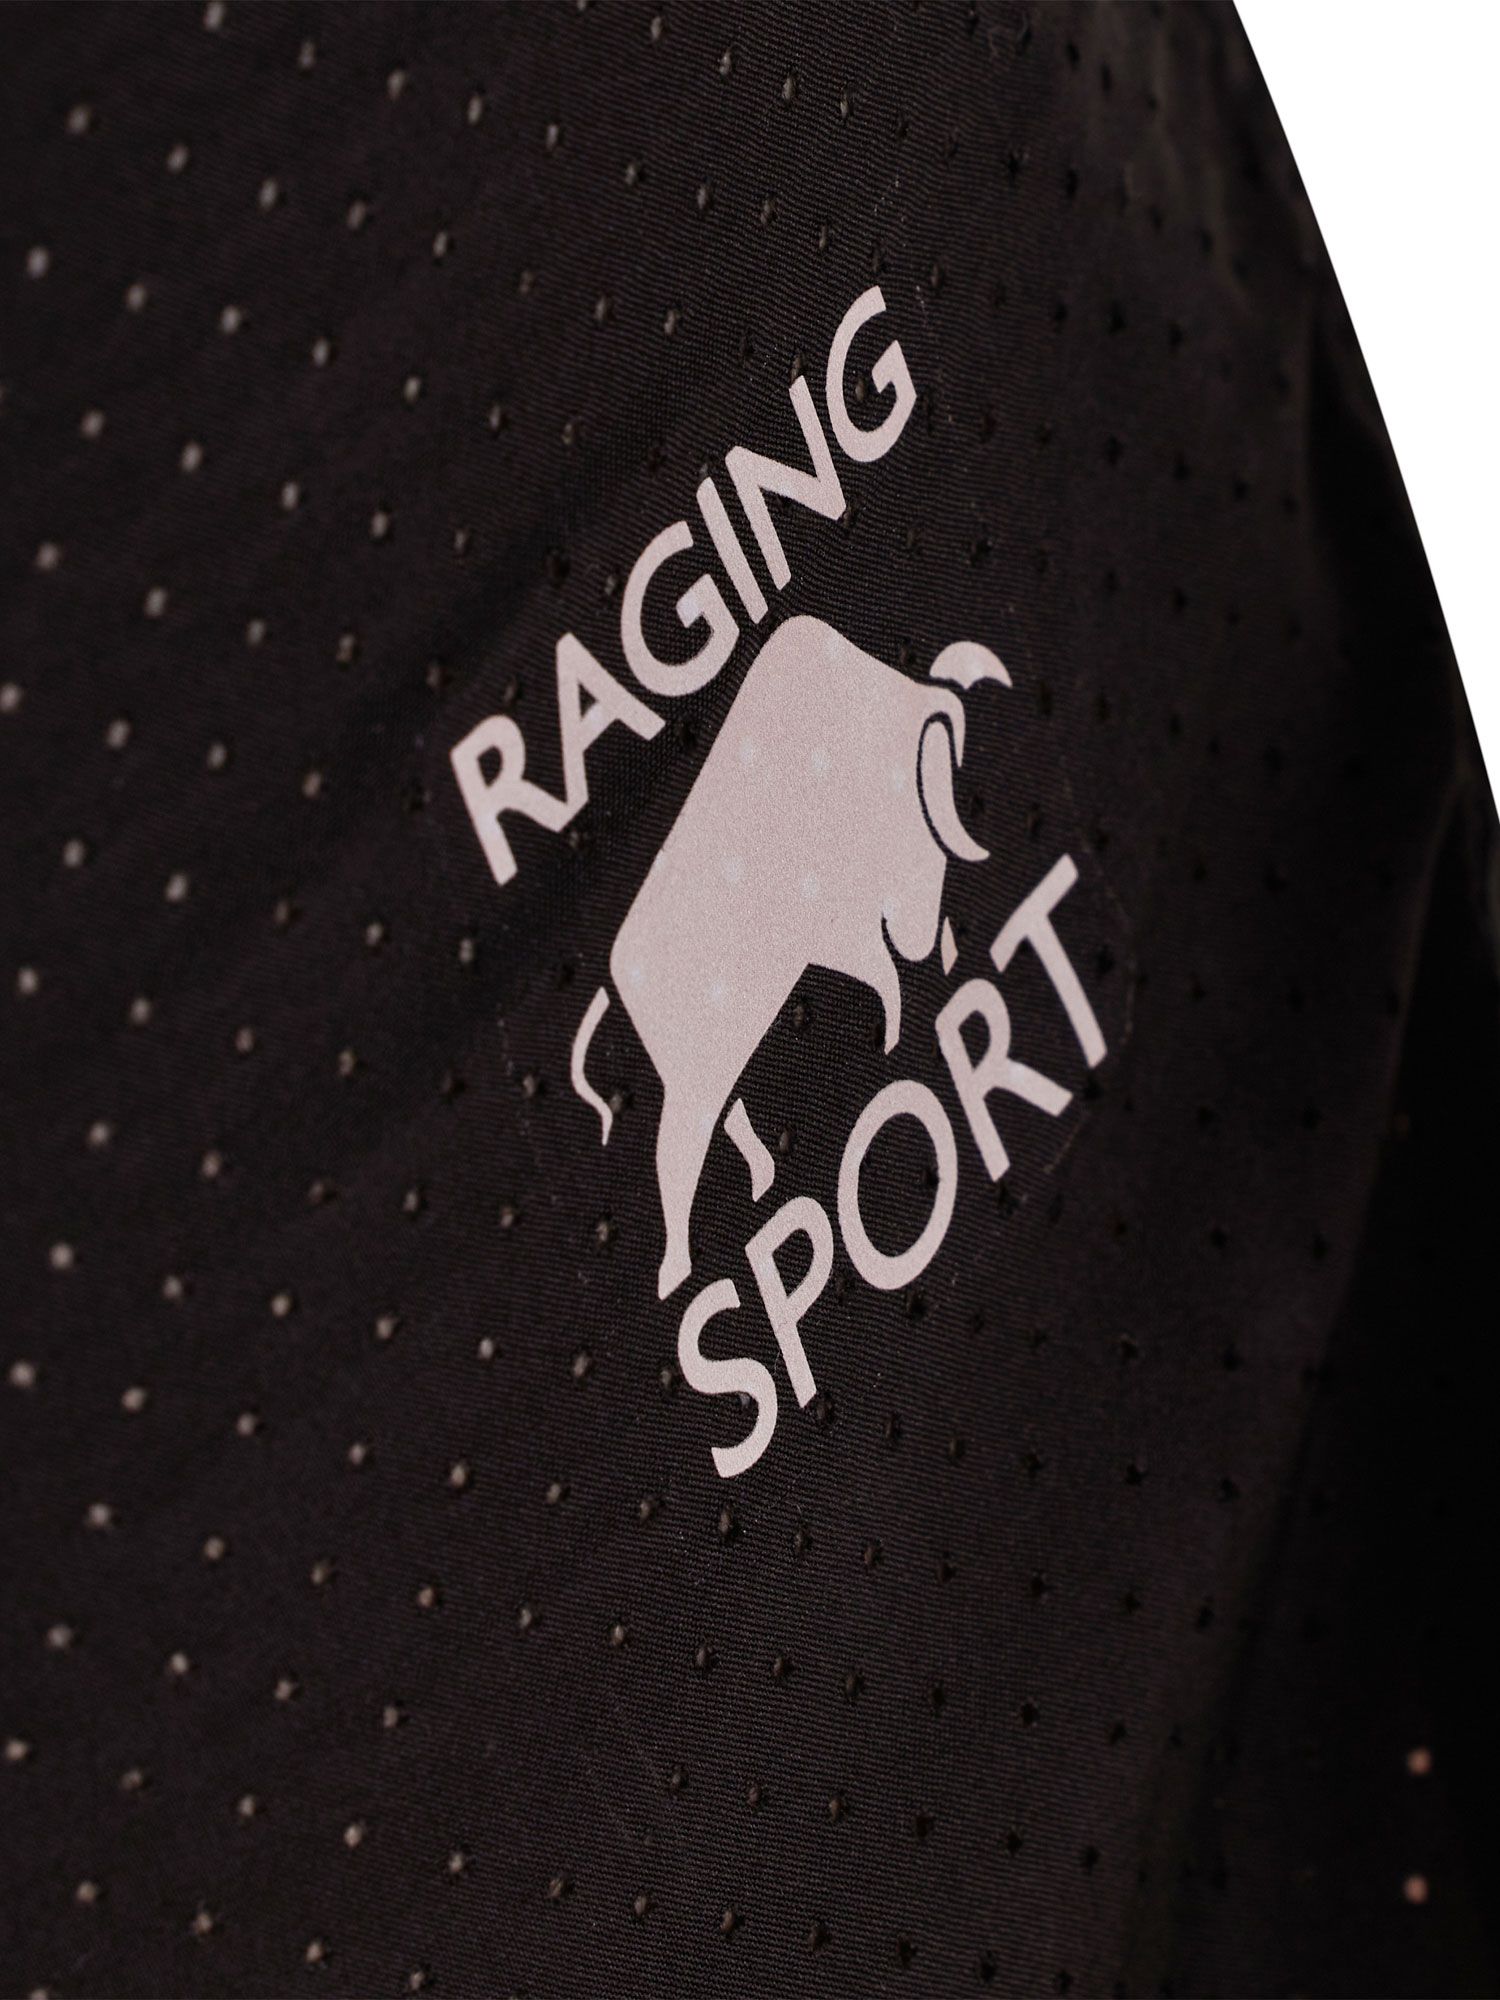 Raging Bull Performance Running Shorts, Black, S